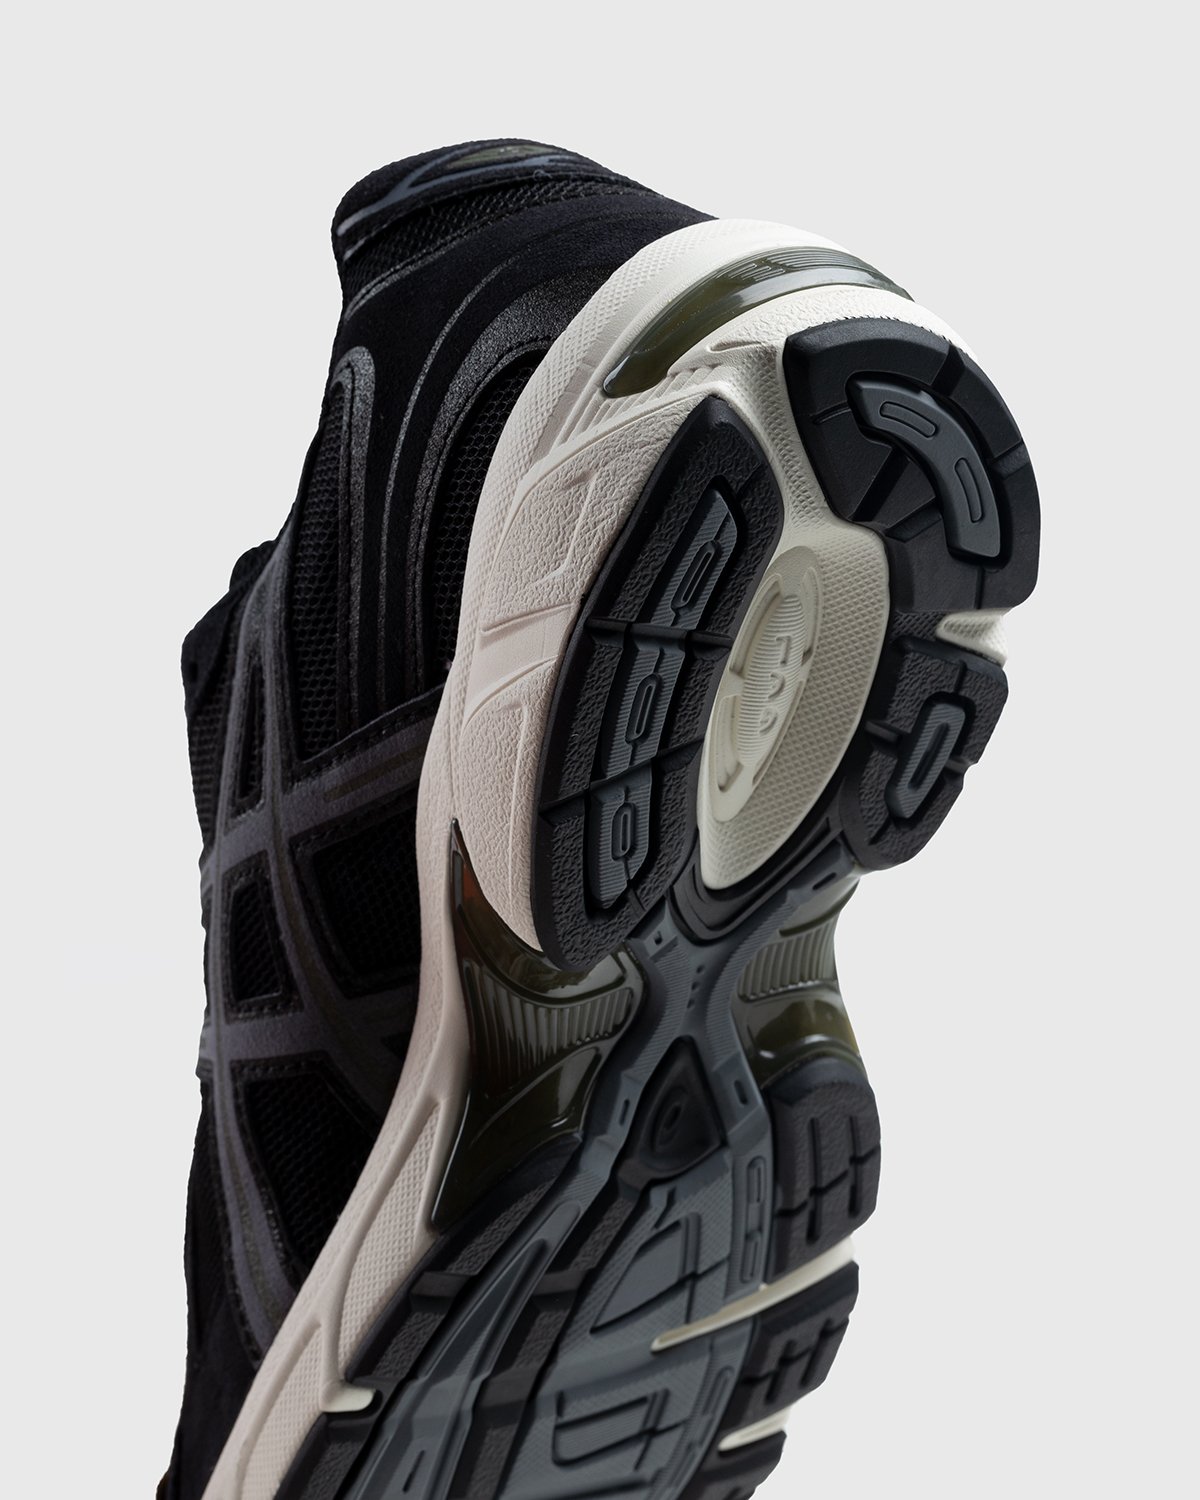 asics - Gel-1130 Black/Metropolis - Footwear - Black - Image 6